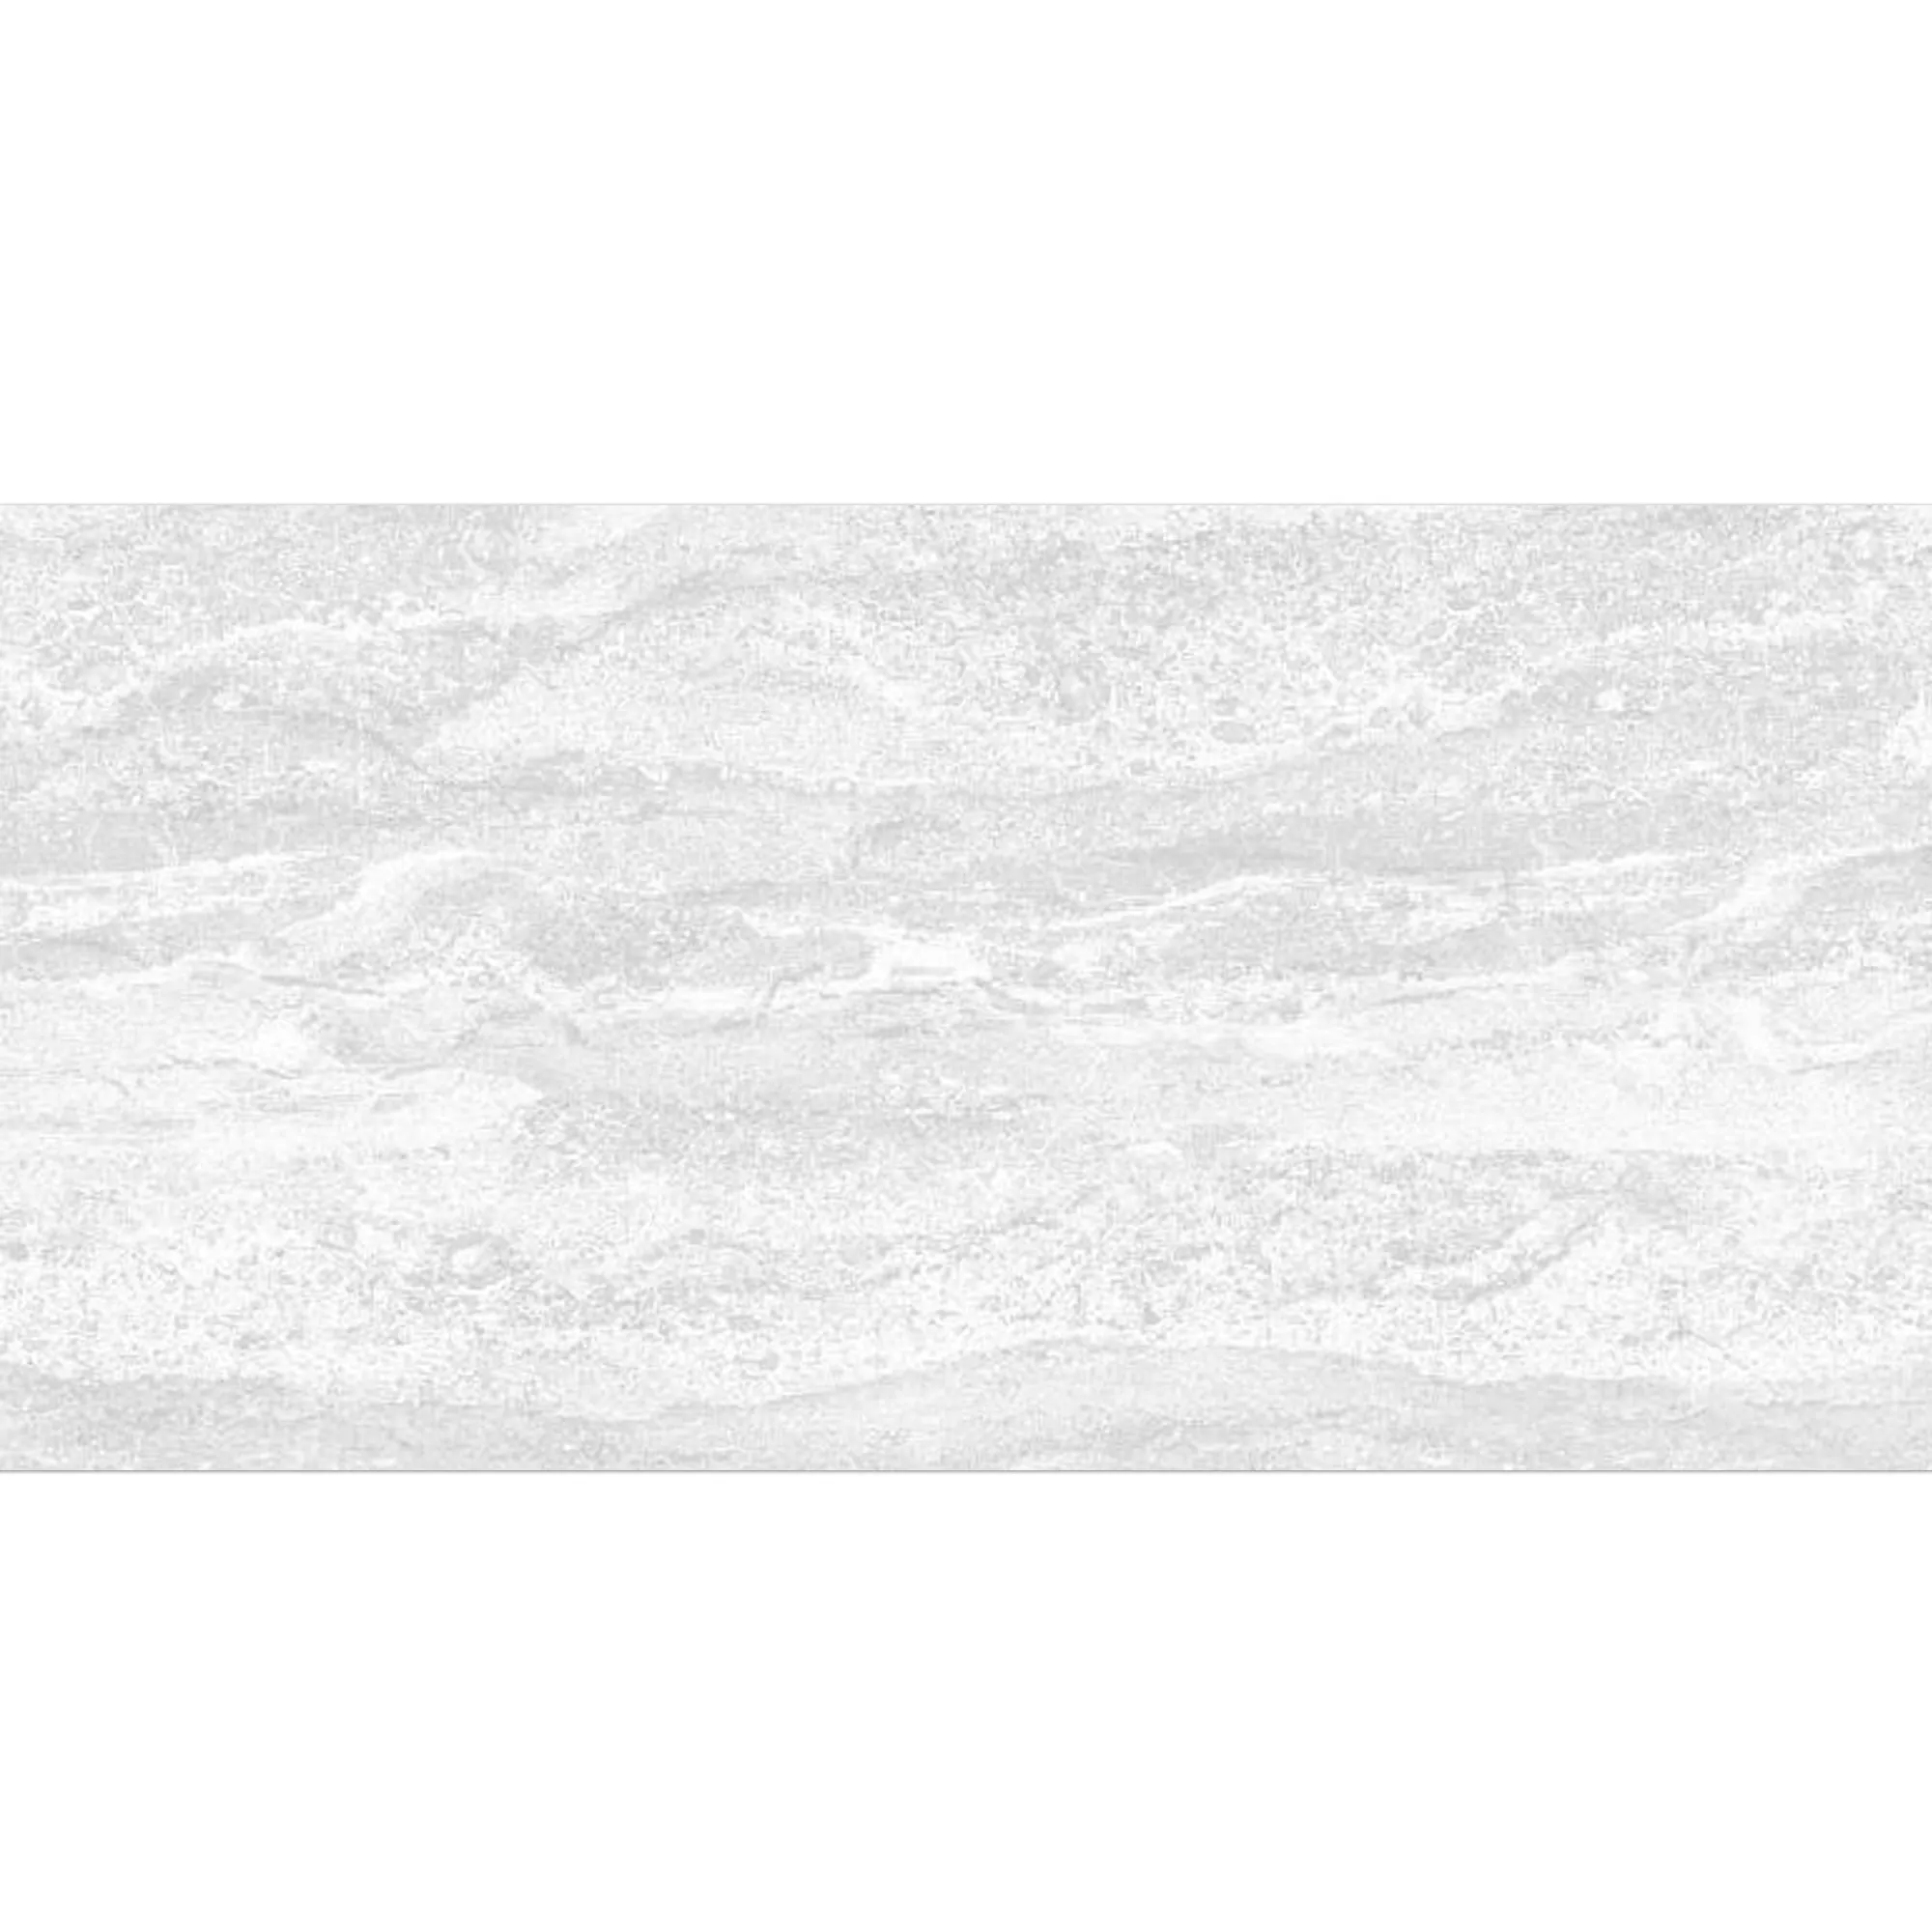 Wandfliese Bellinzona Weiß Strukturiert 30x60cm